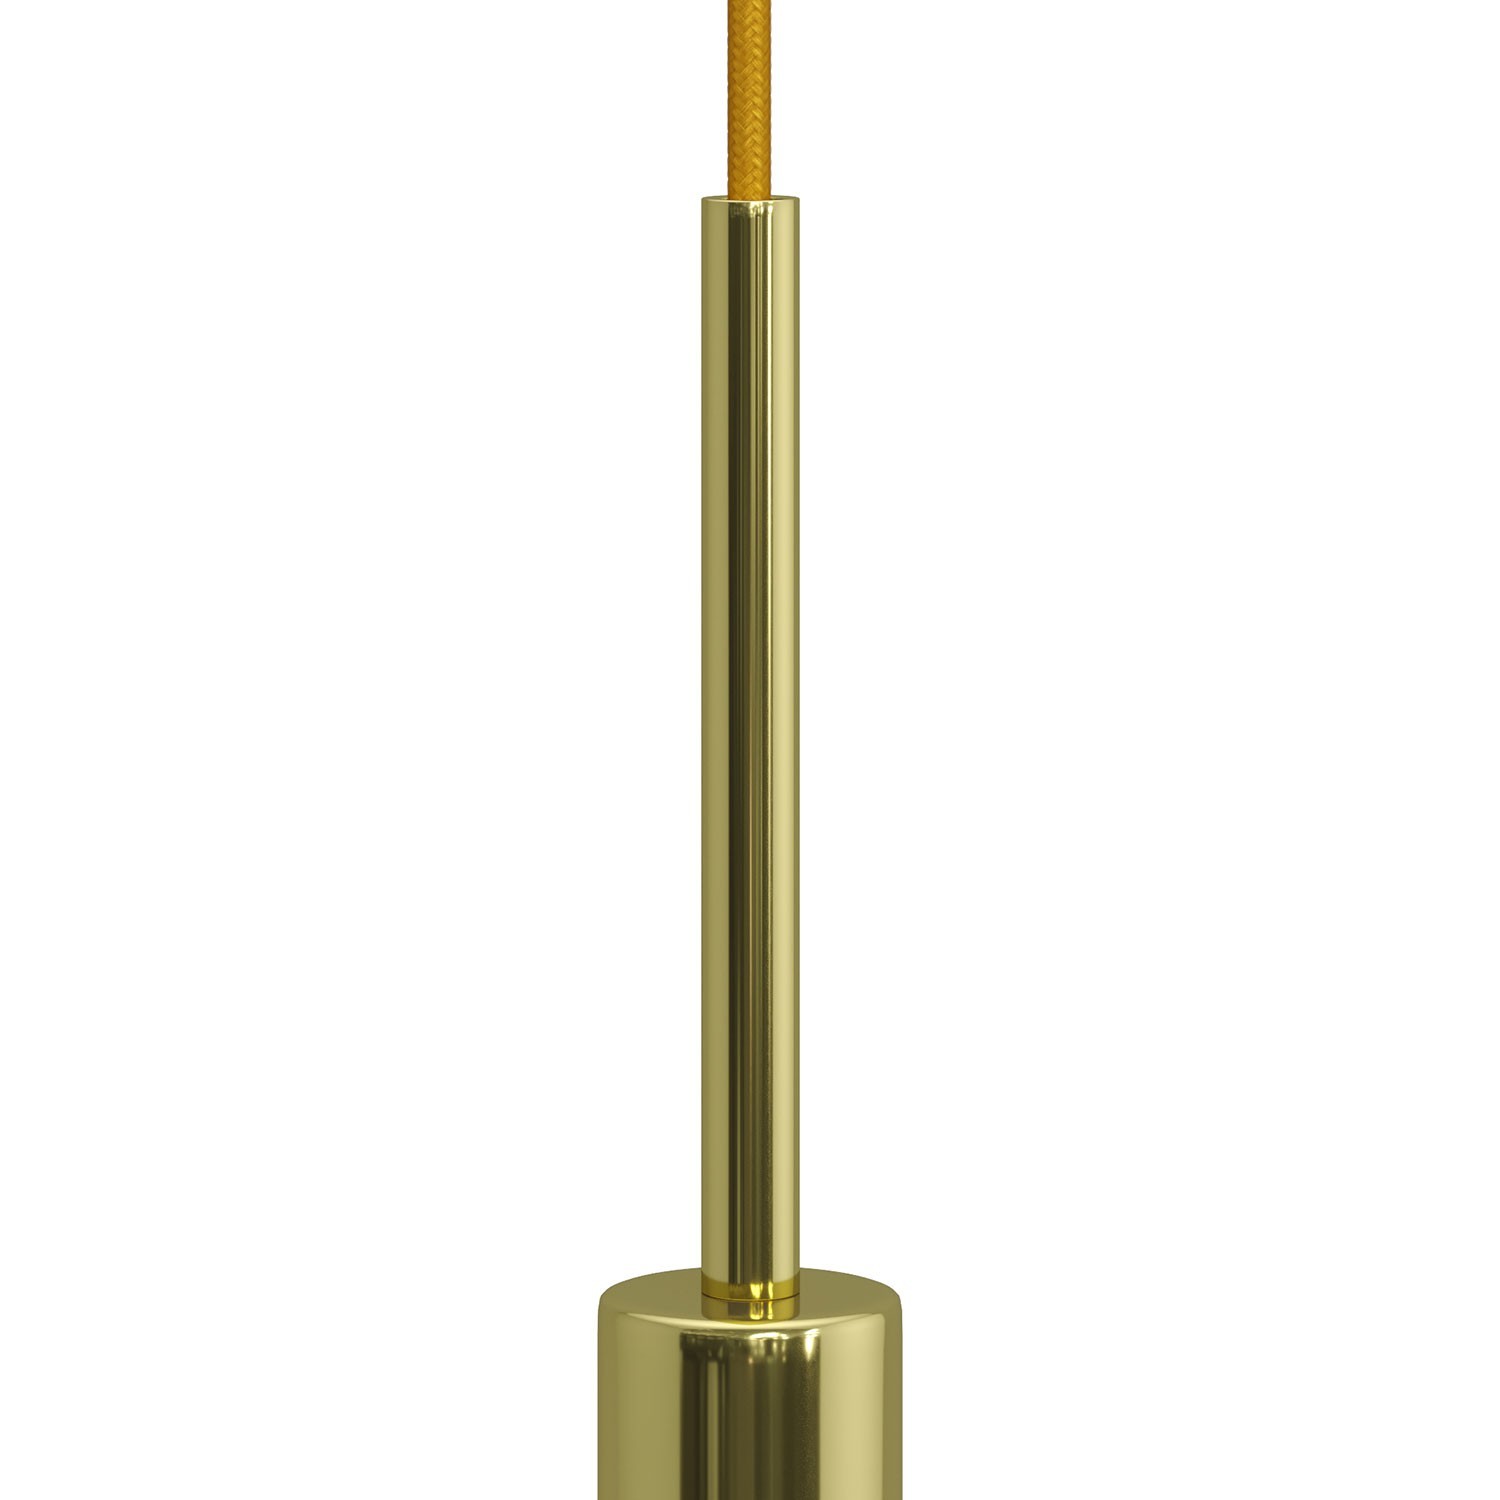 Serre-câble cylindrique en métal long 15 cm avec tige, écrou et rondelle